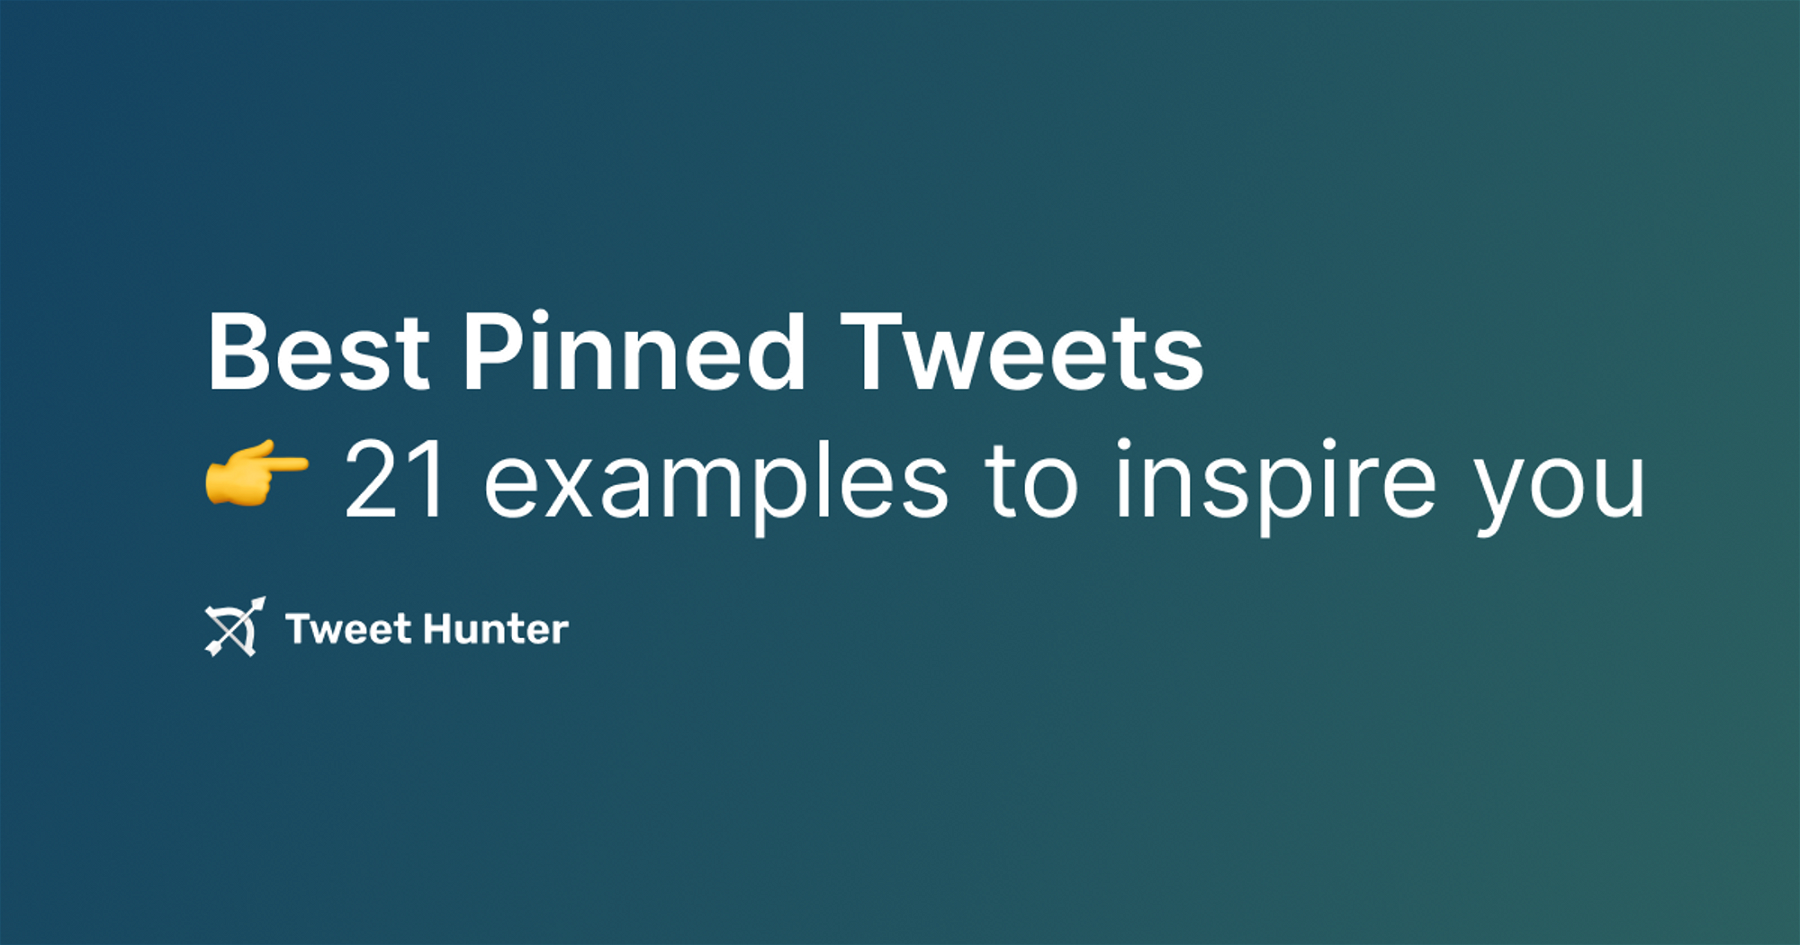 Best Pinned Tweets - 21 examples